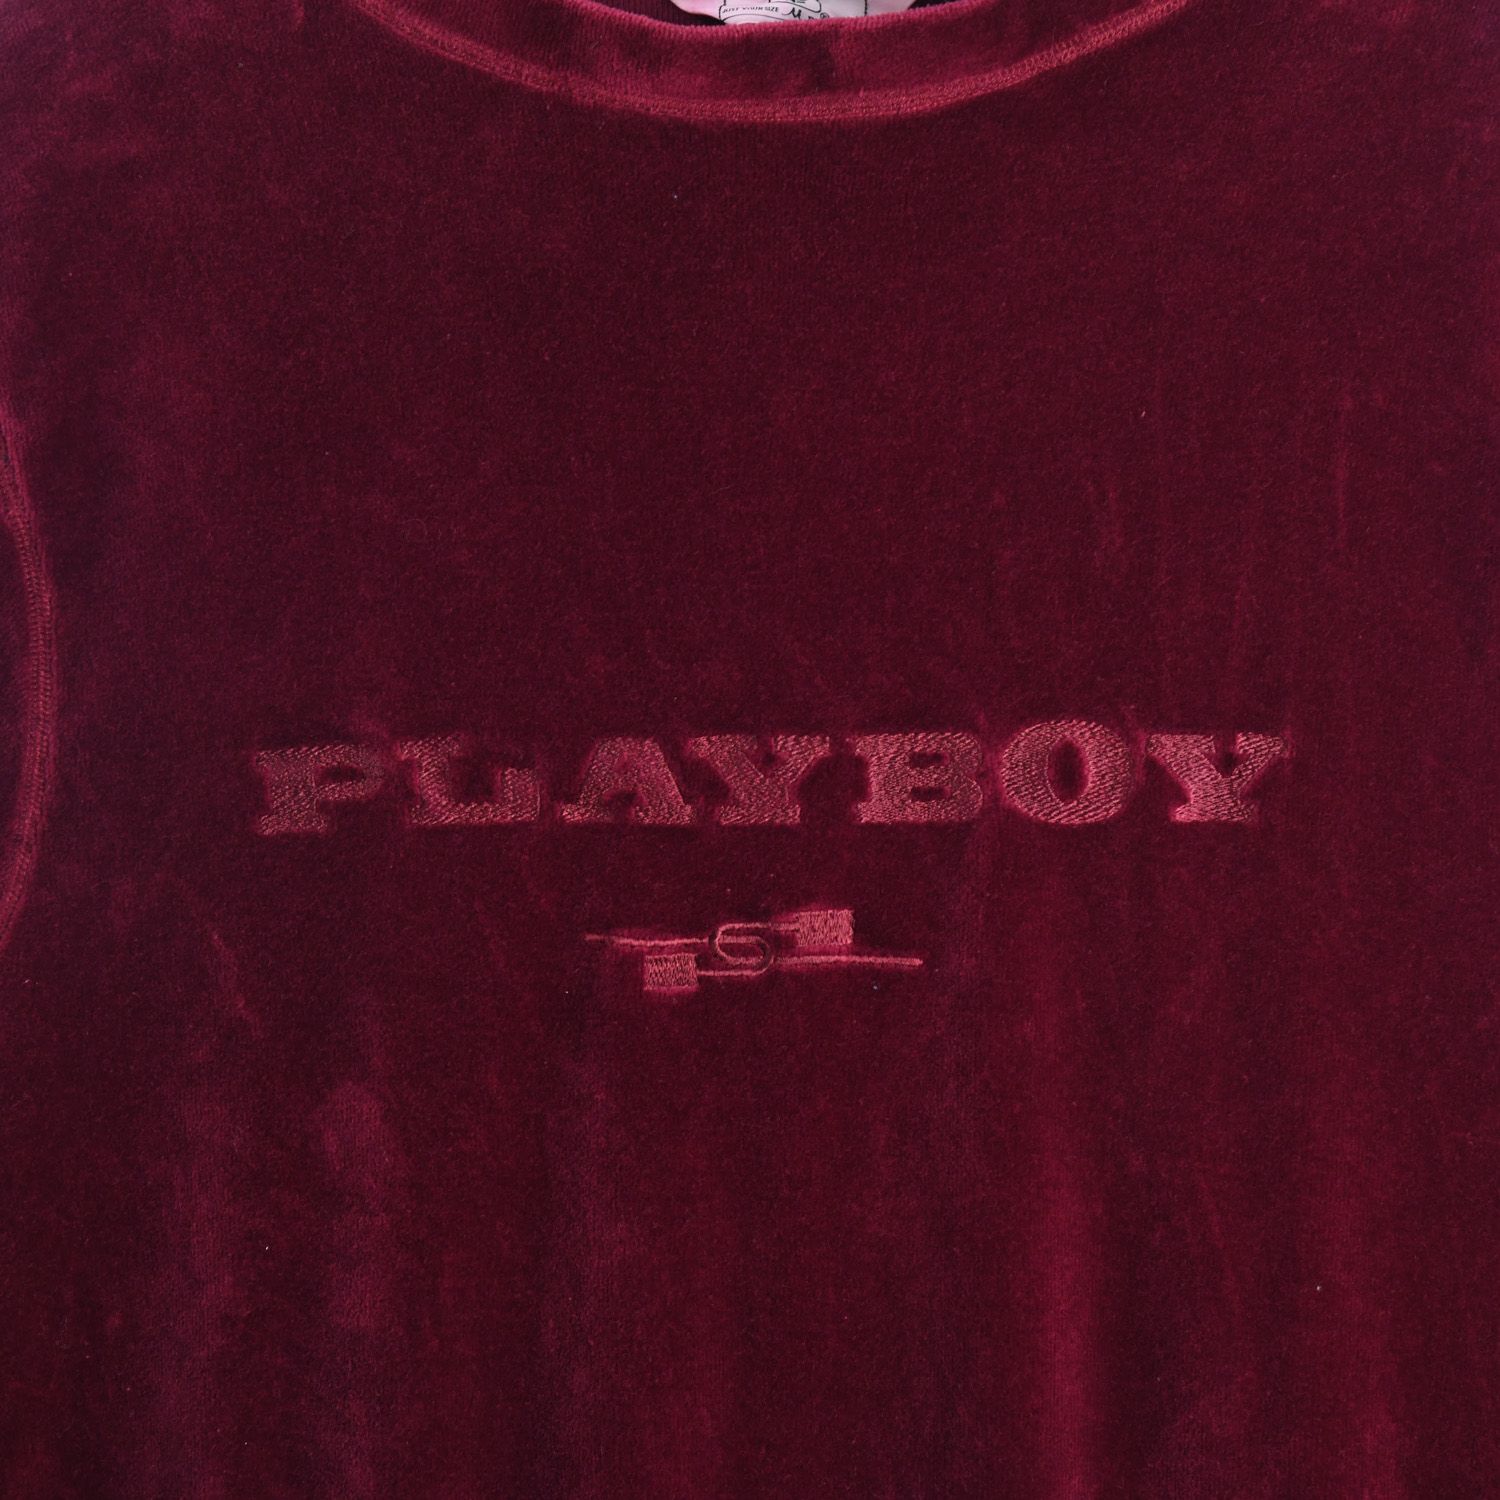 Playboy 1990s Velour Long Sleeve Sweatshirt